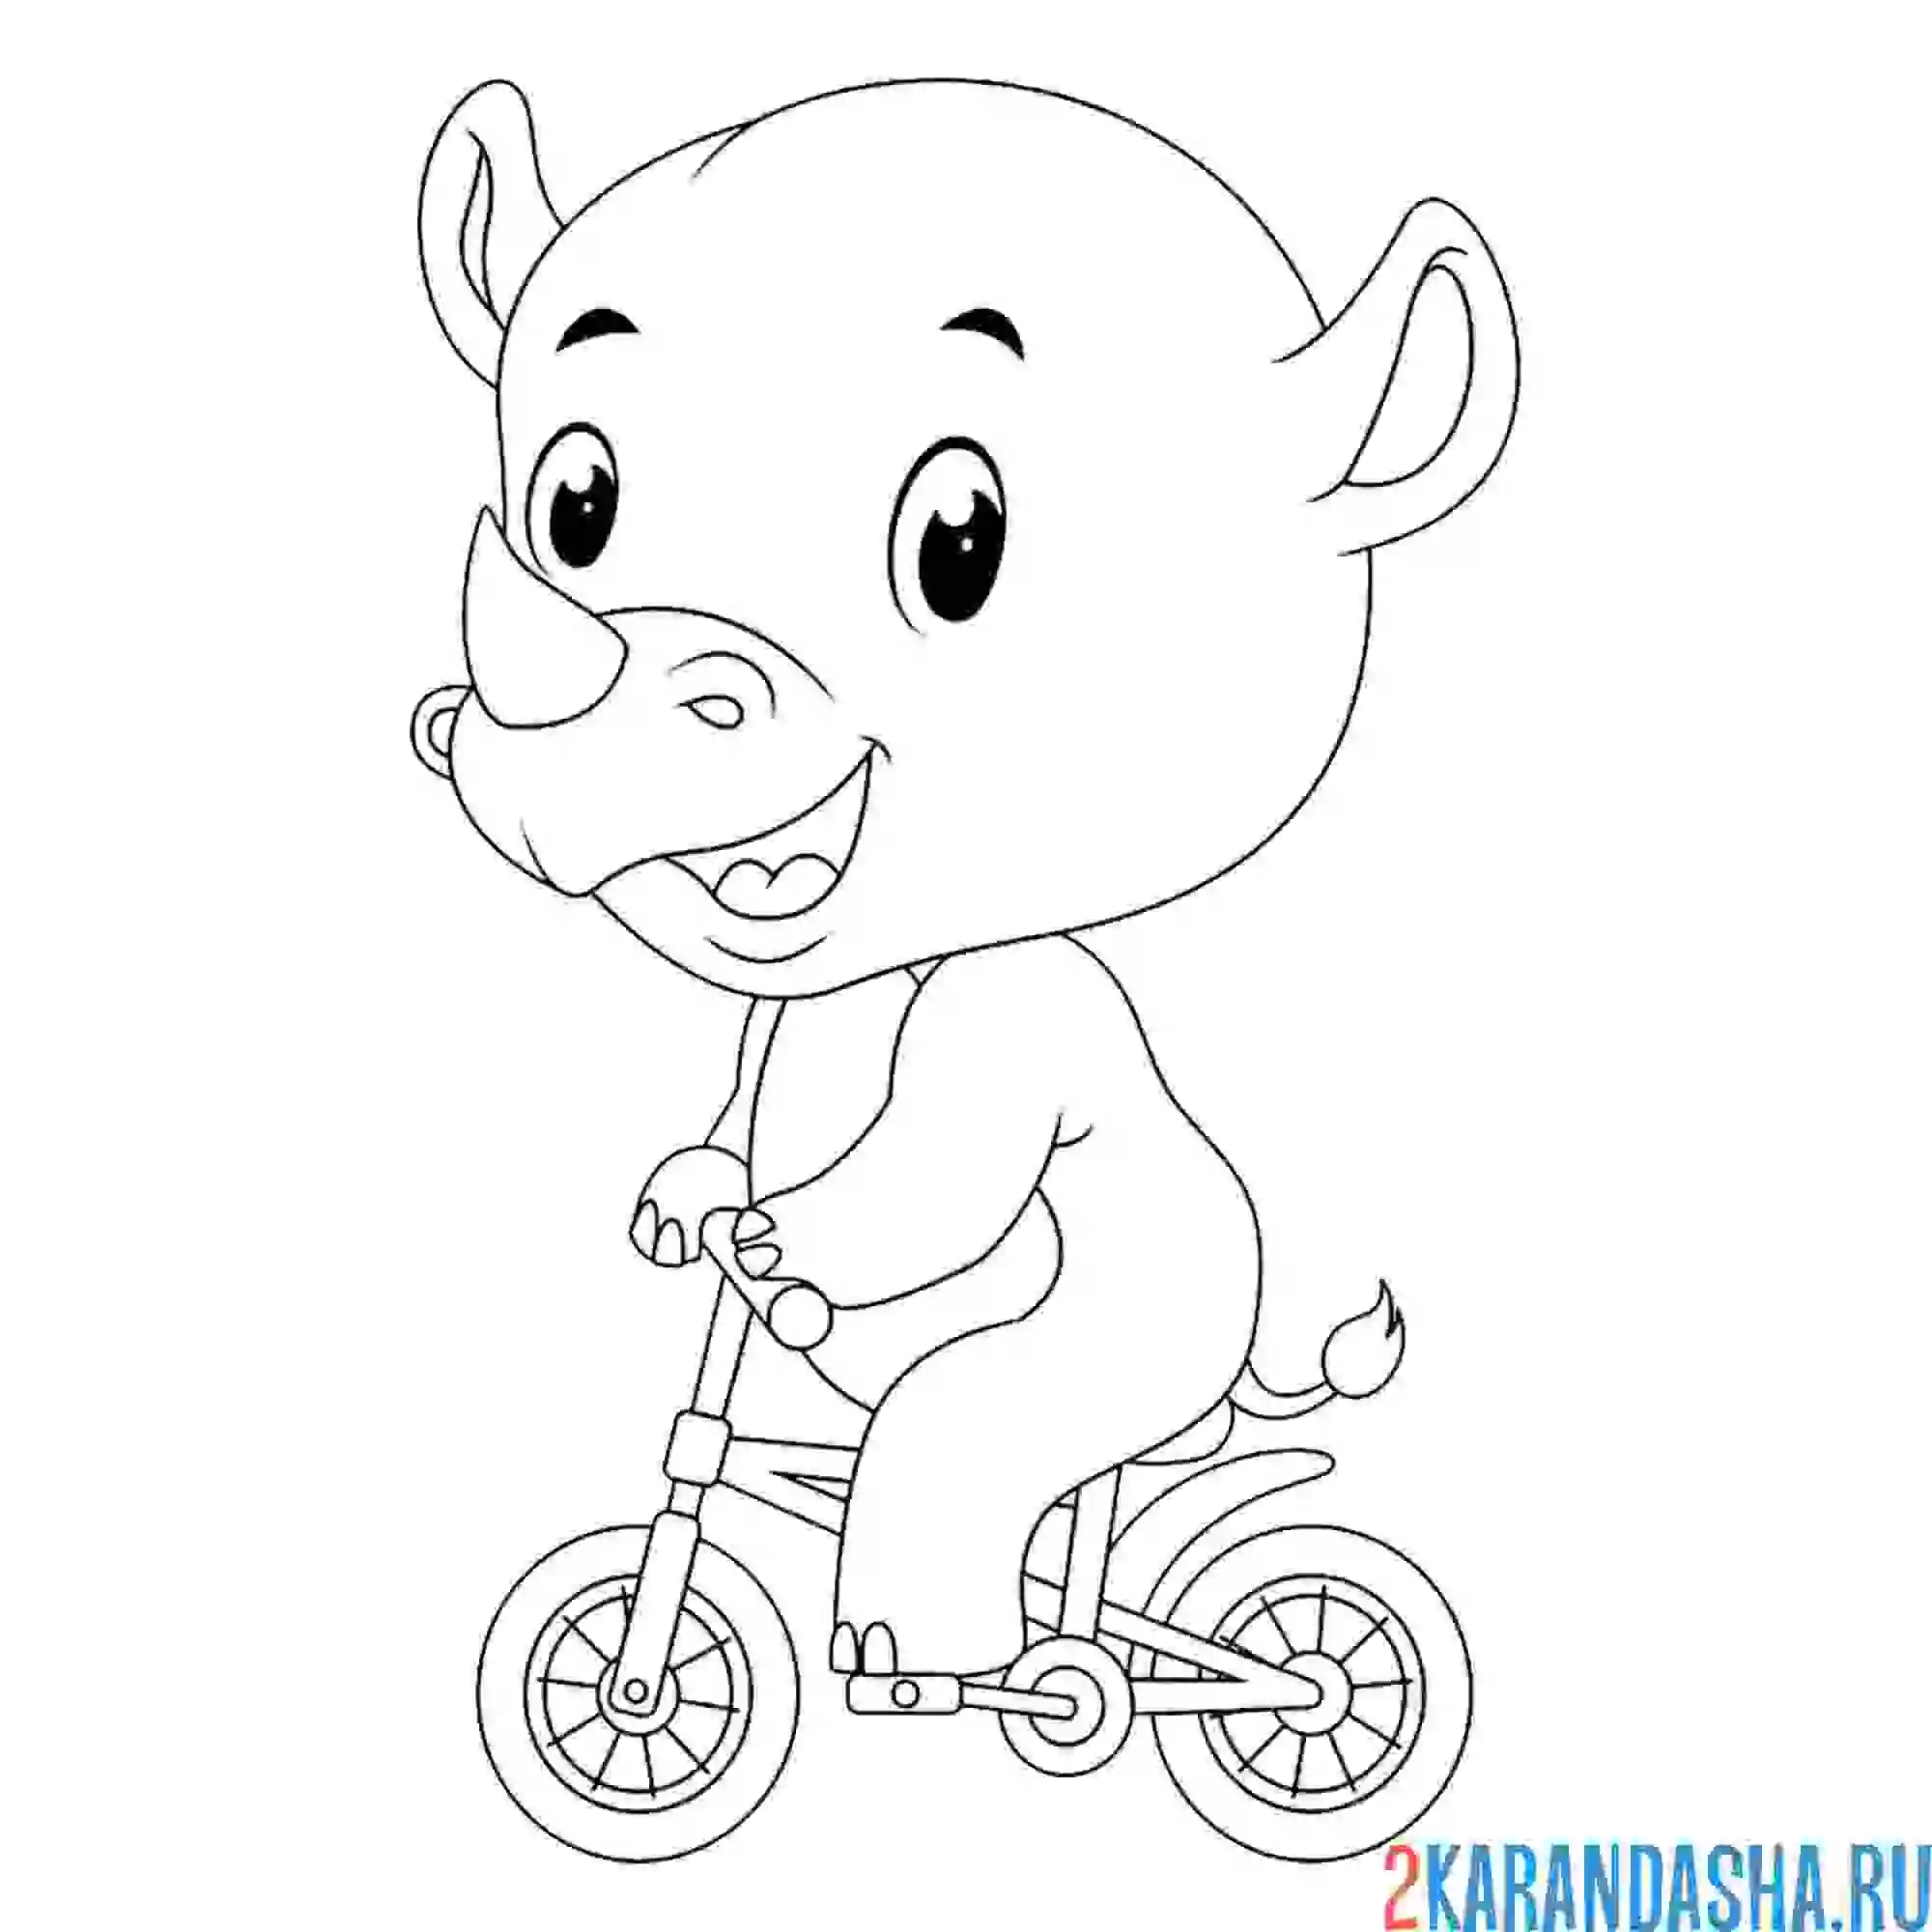 Раскраска маленький носорог на велосипеде